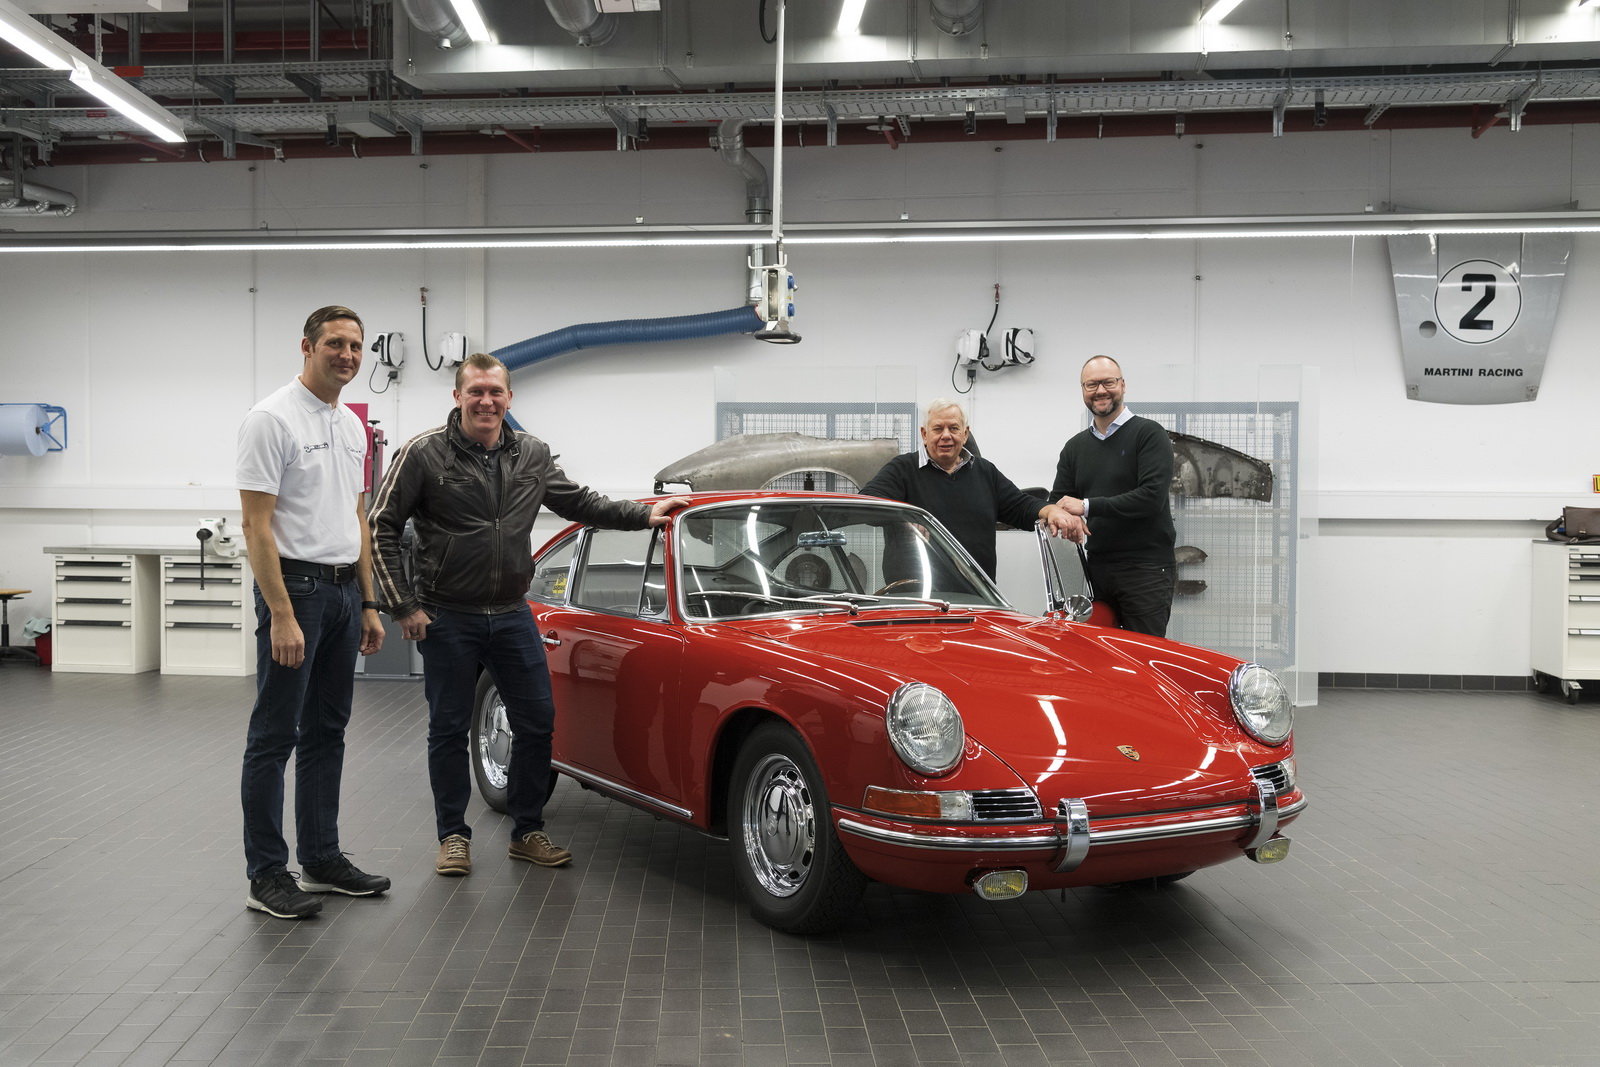 Muzeum Porsche konečně představilo dlouho chybějící exponát, nejstarší model 911 série 901 z roku 1964